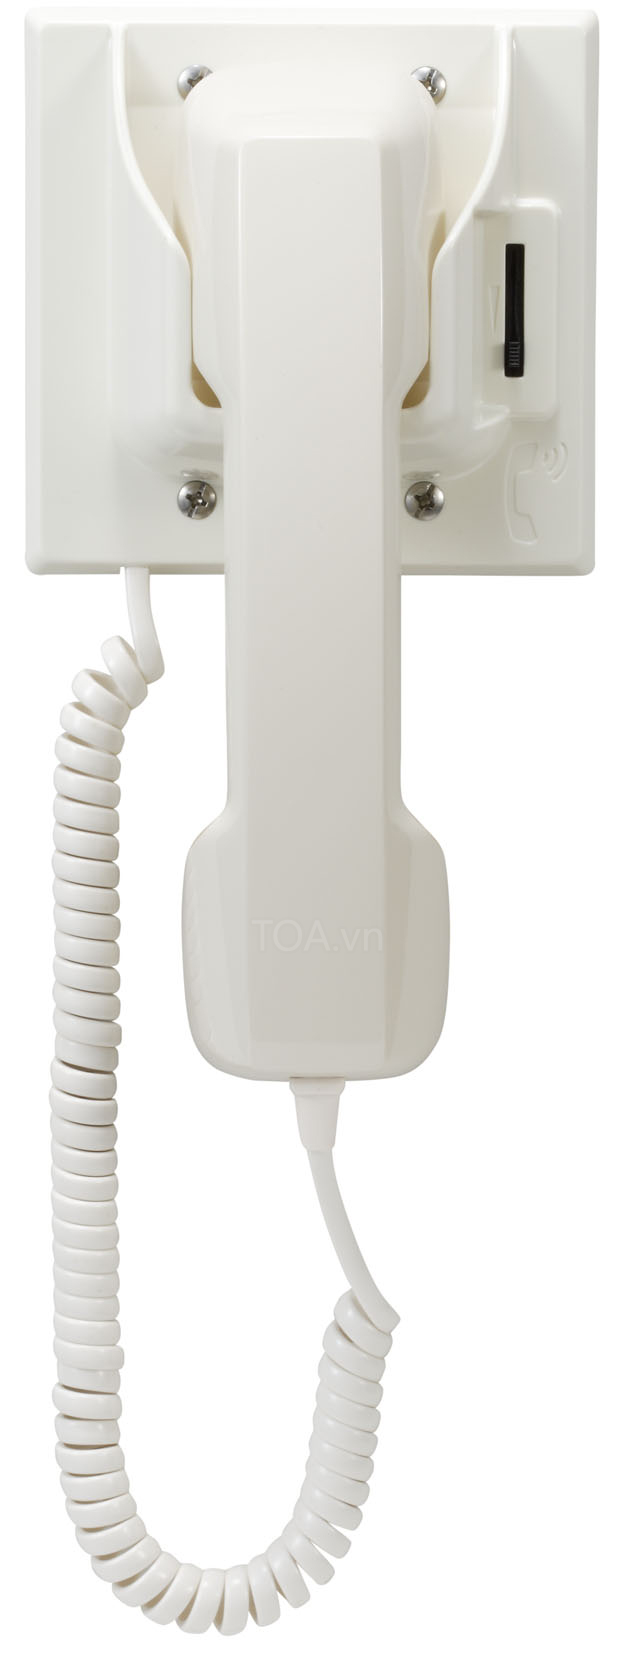 TOA RS-481, Thiết bị liên lạc IP RS-481, bán liên lạc IP Intercom RS-481, giá thiết bị cầm tay tùy chọn TOA RS-481